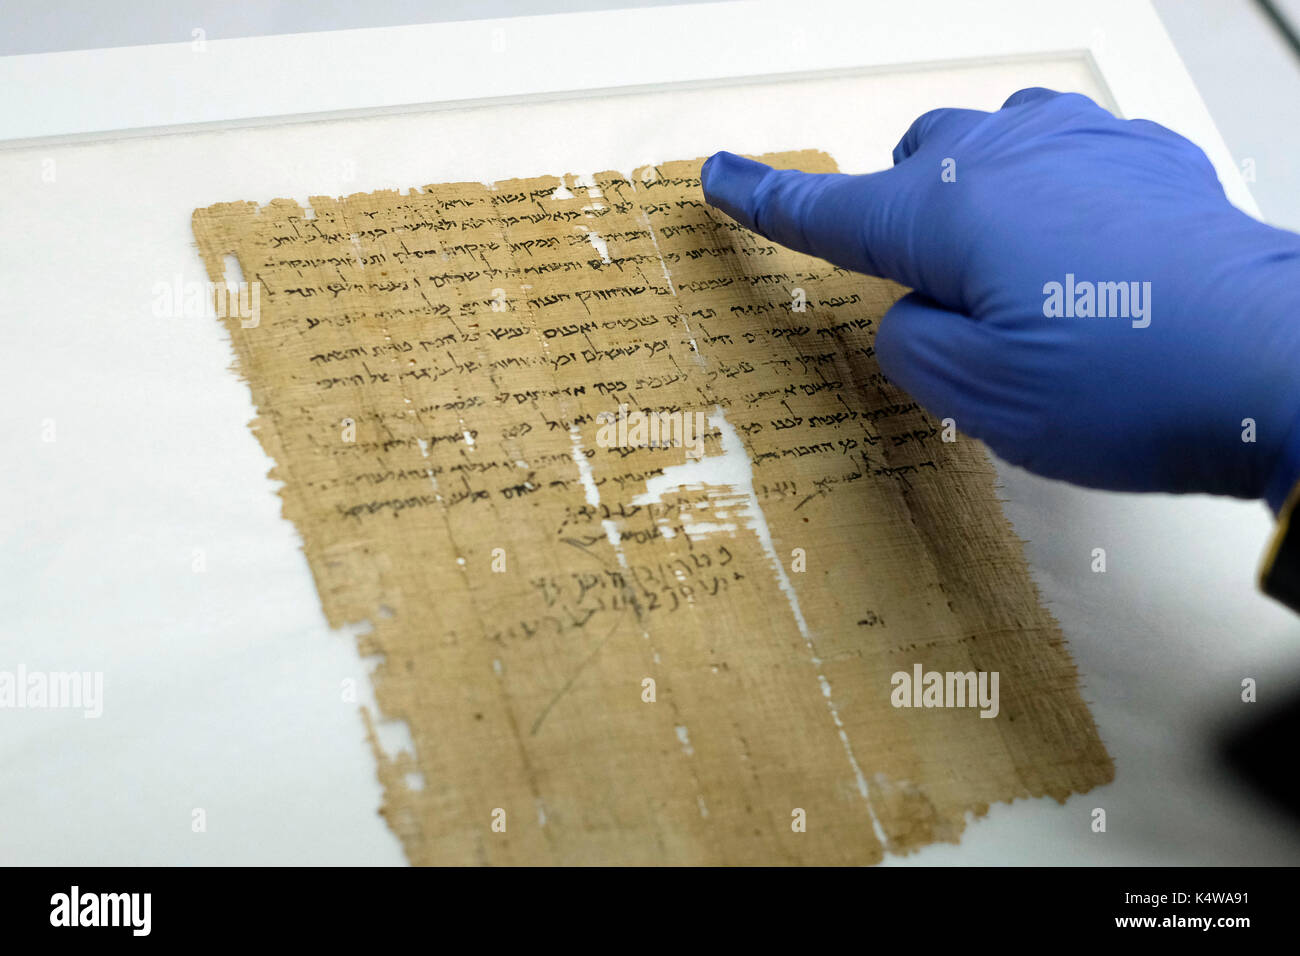 Un analyste de la conservation de l'Israel Antiquities Authority pointant sur l'Hébreu ancien écrit dans un fragment de la mer morte trouvés à Qumran des grottes à l'intérieur du laboratoire de conservation du Musée d'Israël à Jérusalem Israël Banque D'Images